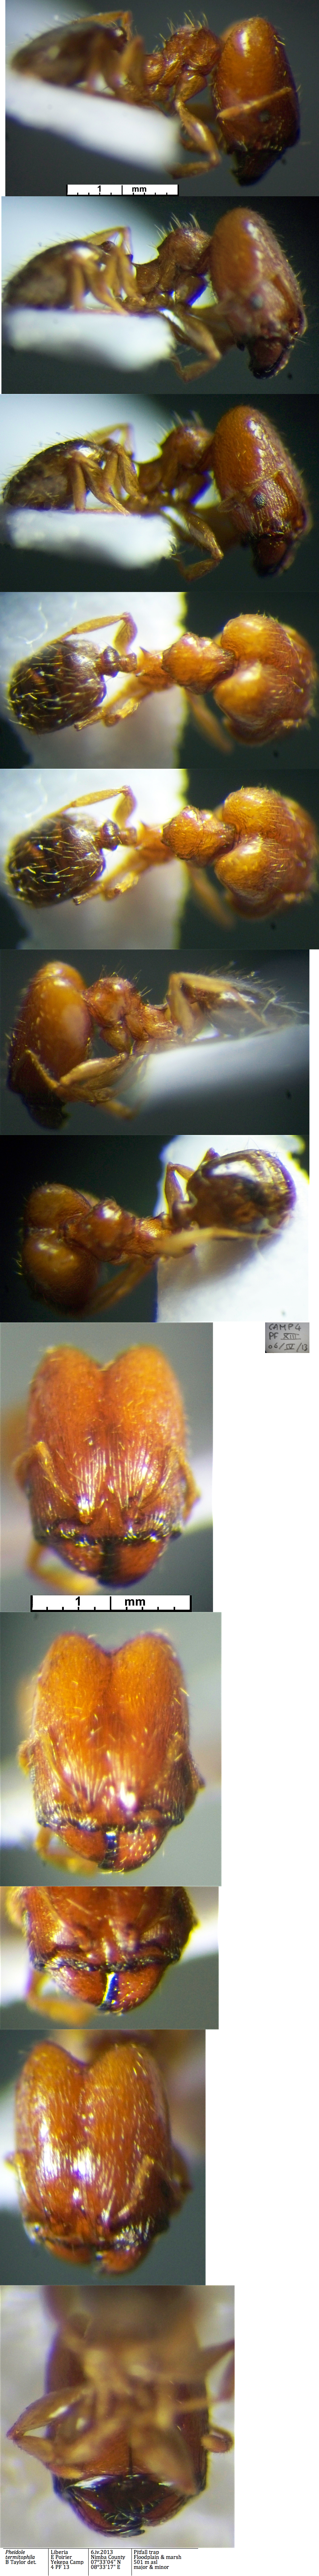 {Pheidole termitophila major}